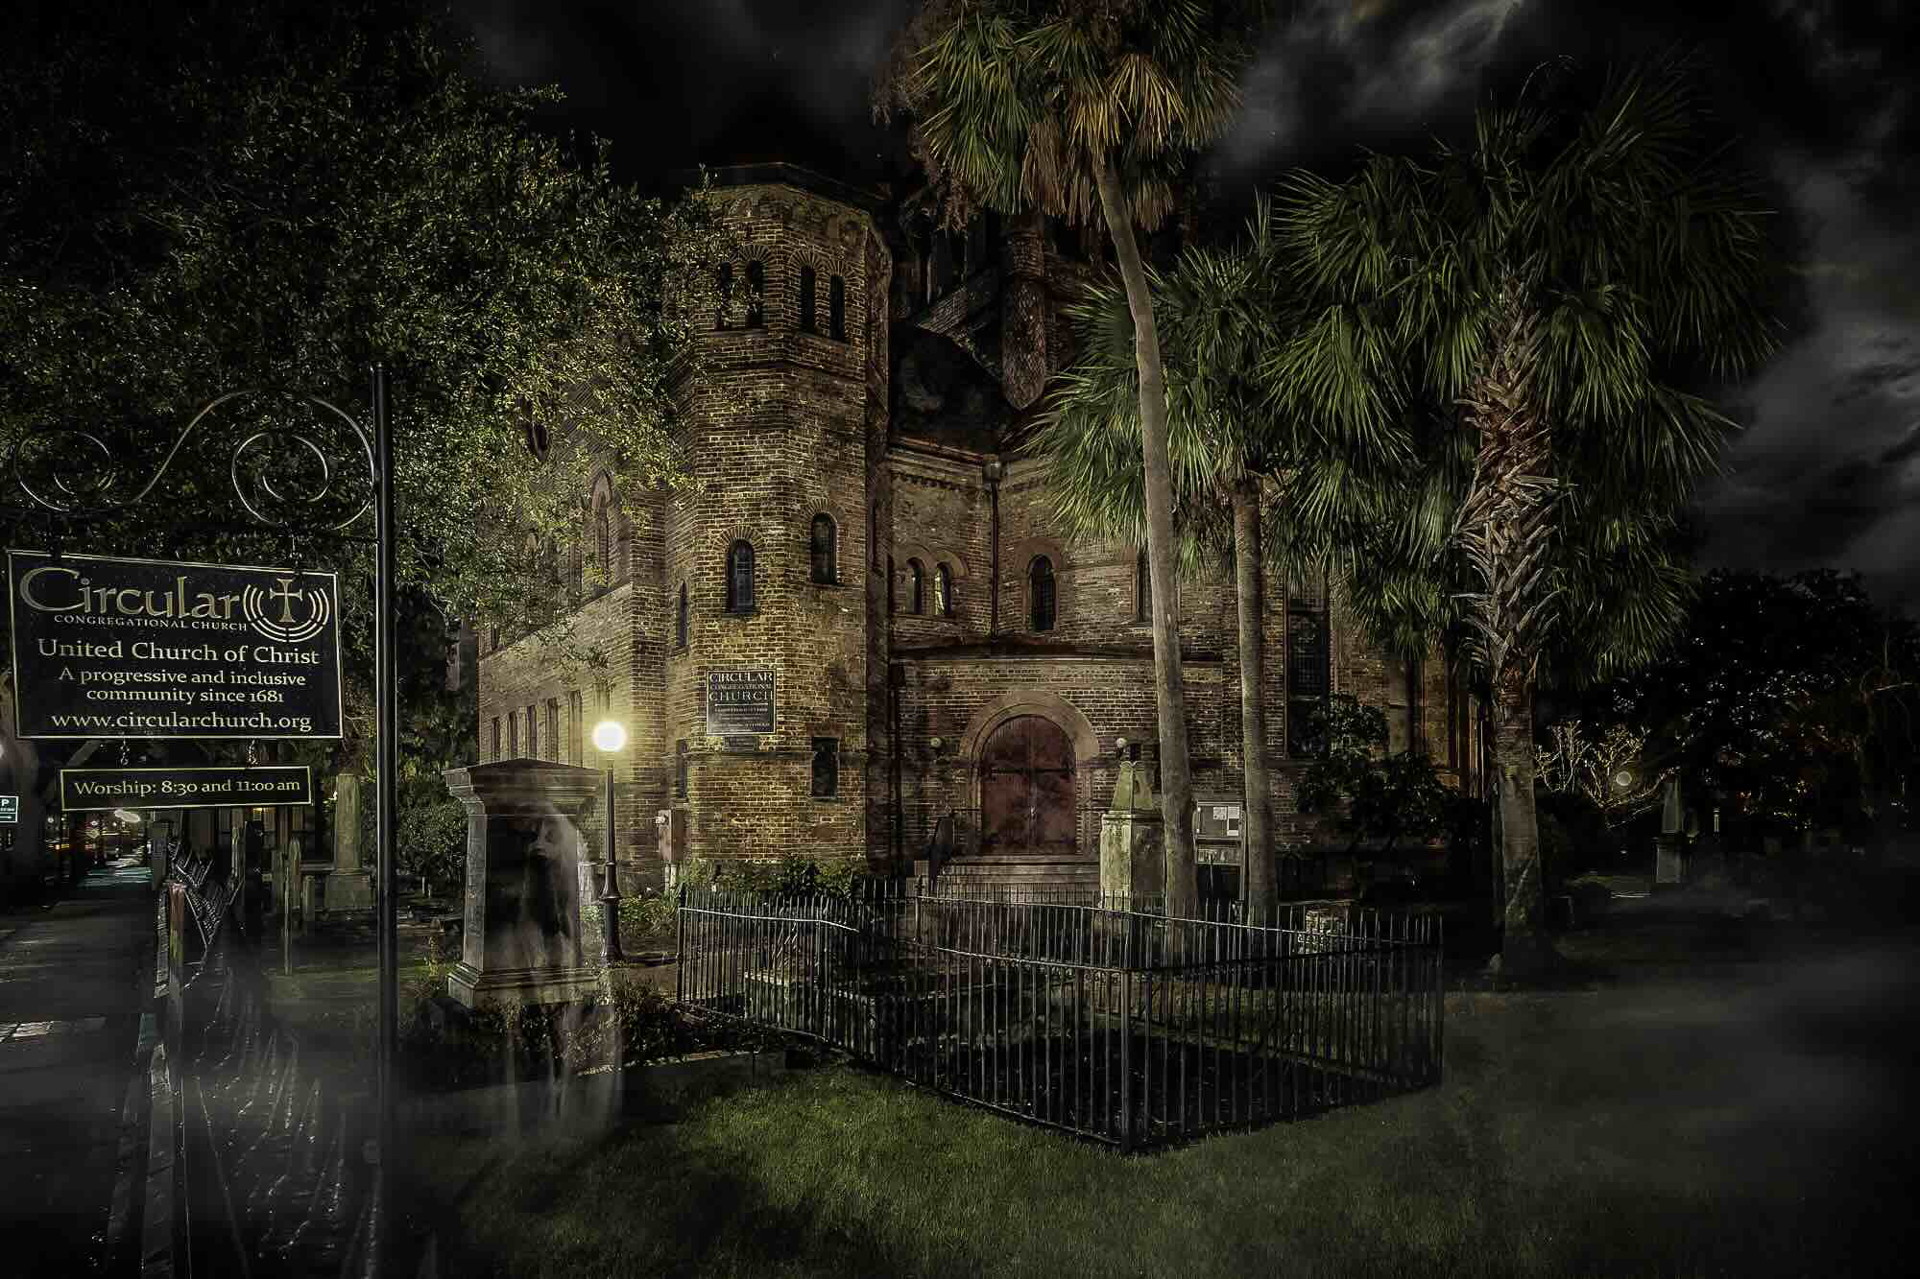 The Haunted History of Circular Church’s Graveyard - Photo